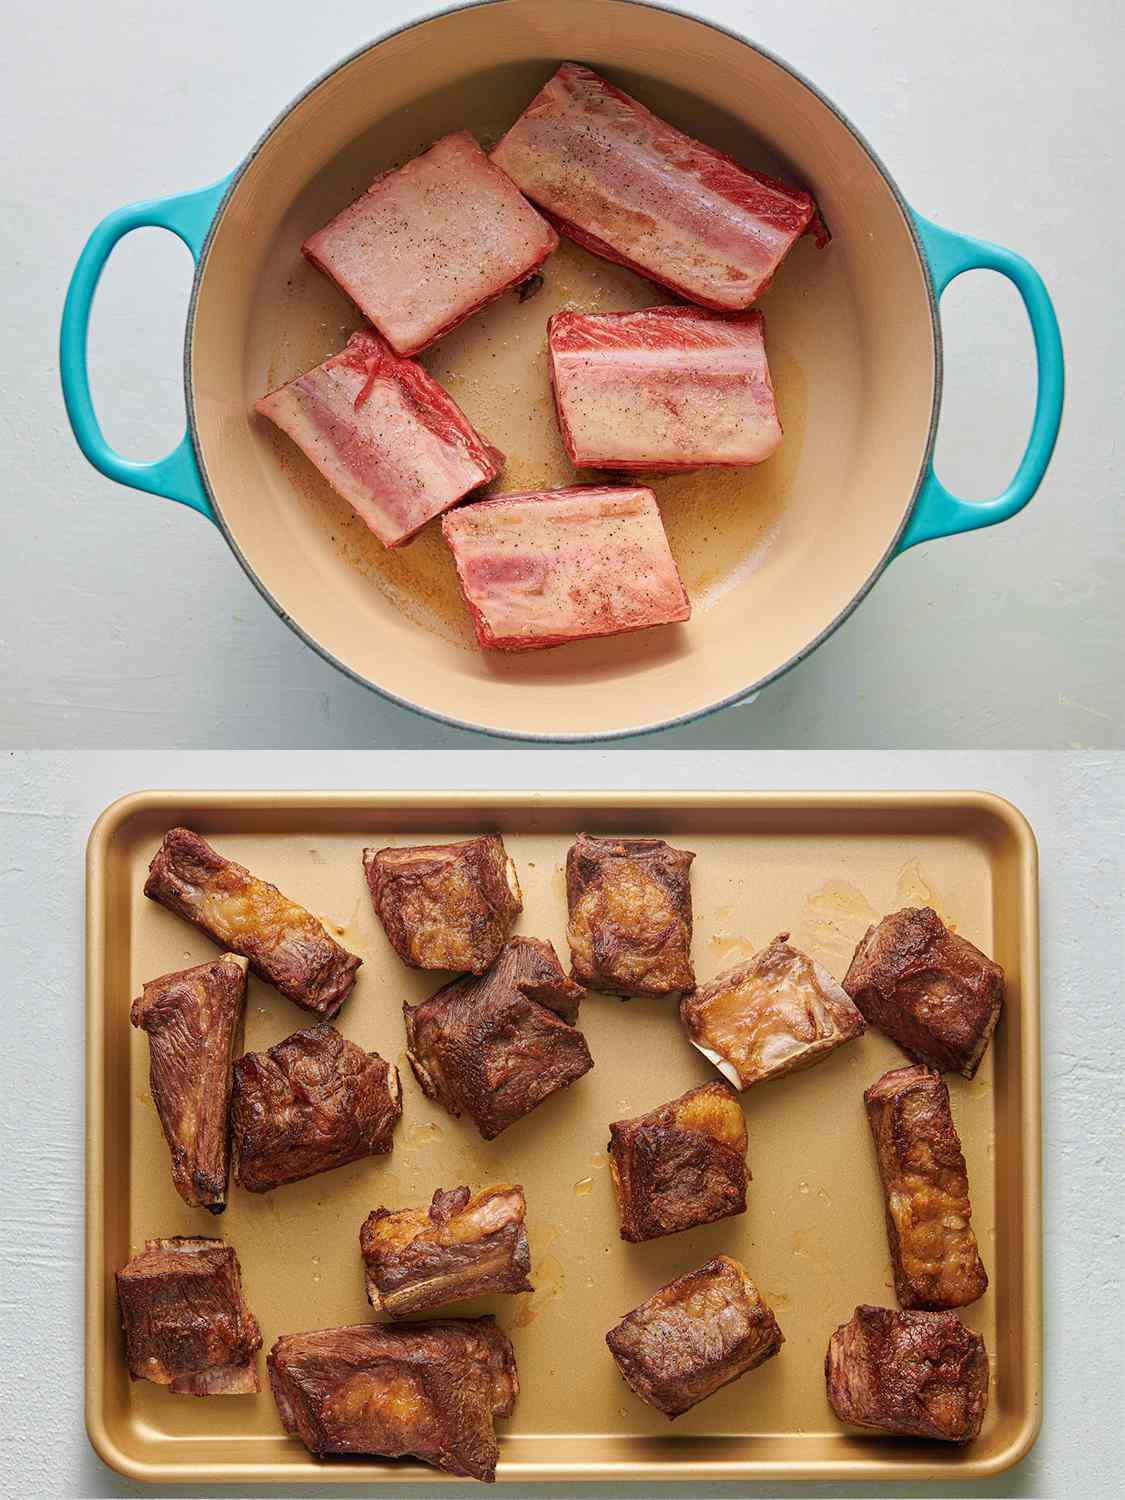 一个双图像拼贴。上面的图片显示了荷兰烤箱里的大块牛肉短肋排被放入热油中。下面的图片显示了烤盘上已经变成棕色的牛肉短肋块。gydF4y2Ba